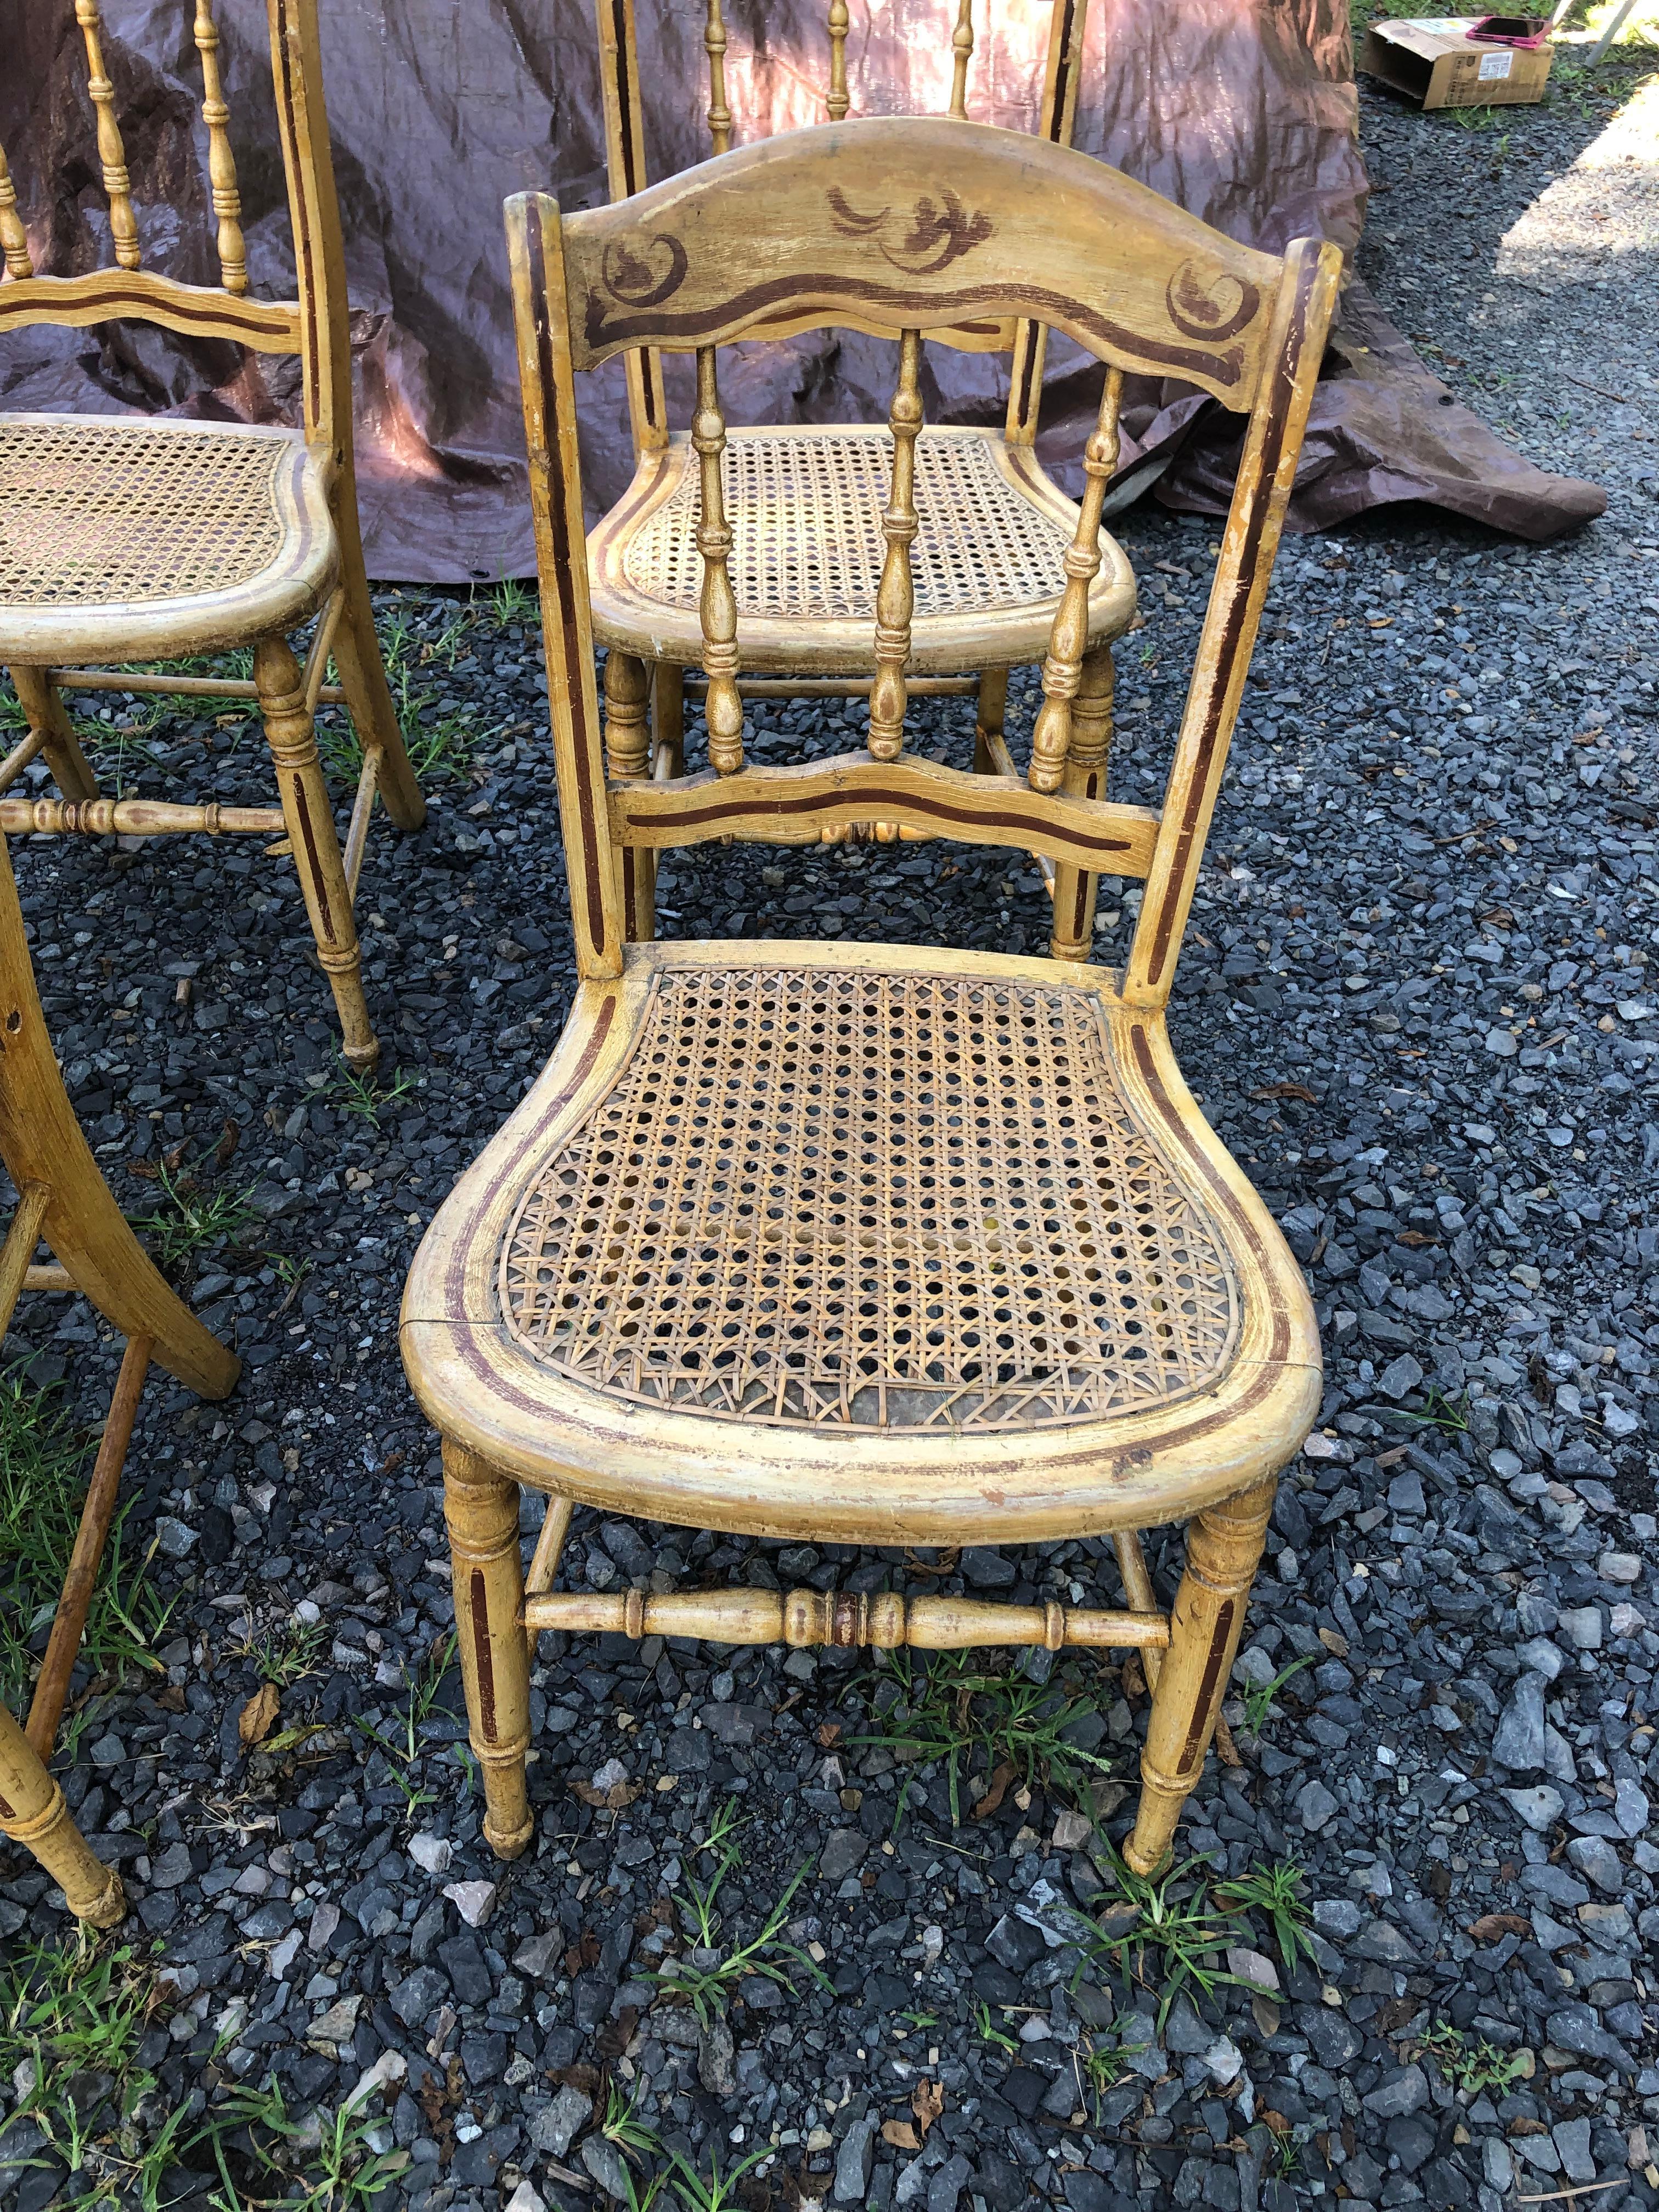 Ensemble de 4 charmantes chaises de salle à manger de fabrication Amish avec dossier en fuseau et assise cannée avec décoration peinte à la main.  Les chaises sont dans un état rustique, mais solides et robustes.  Un siège présente une usure visible